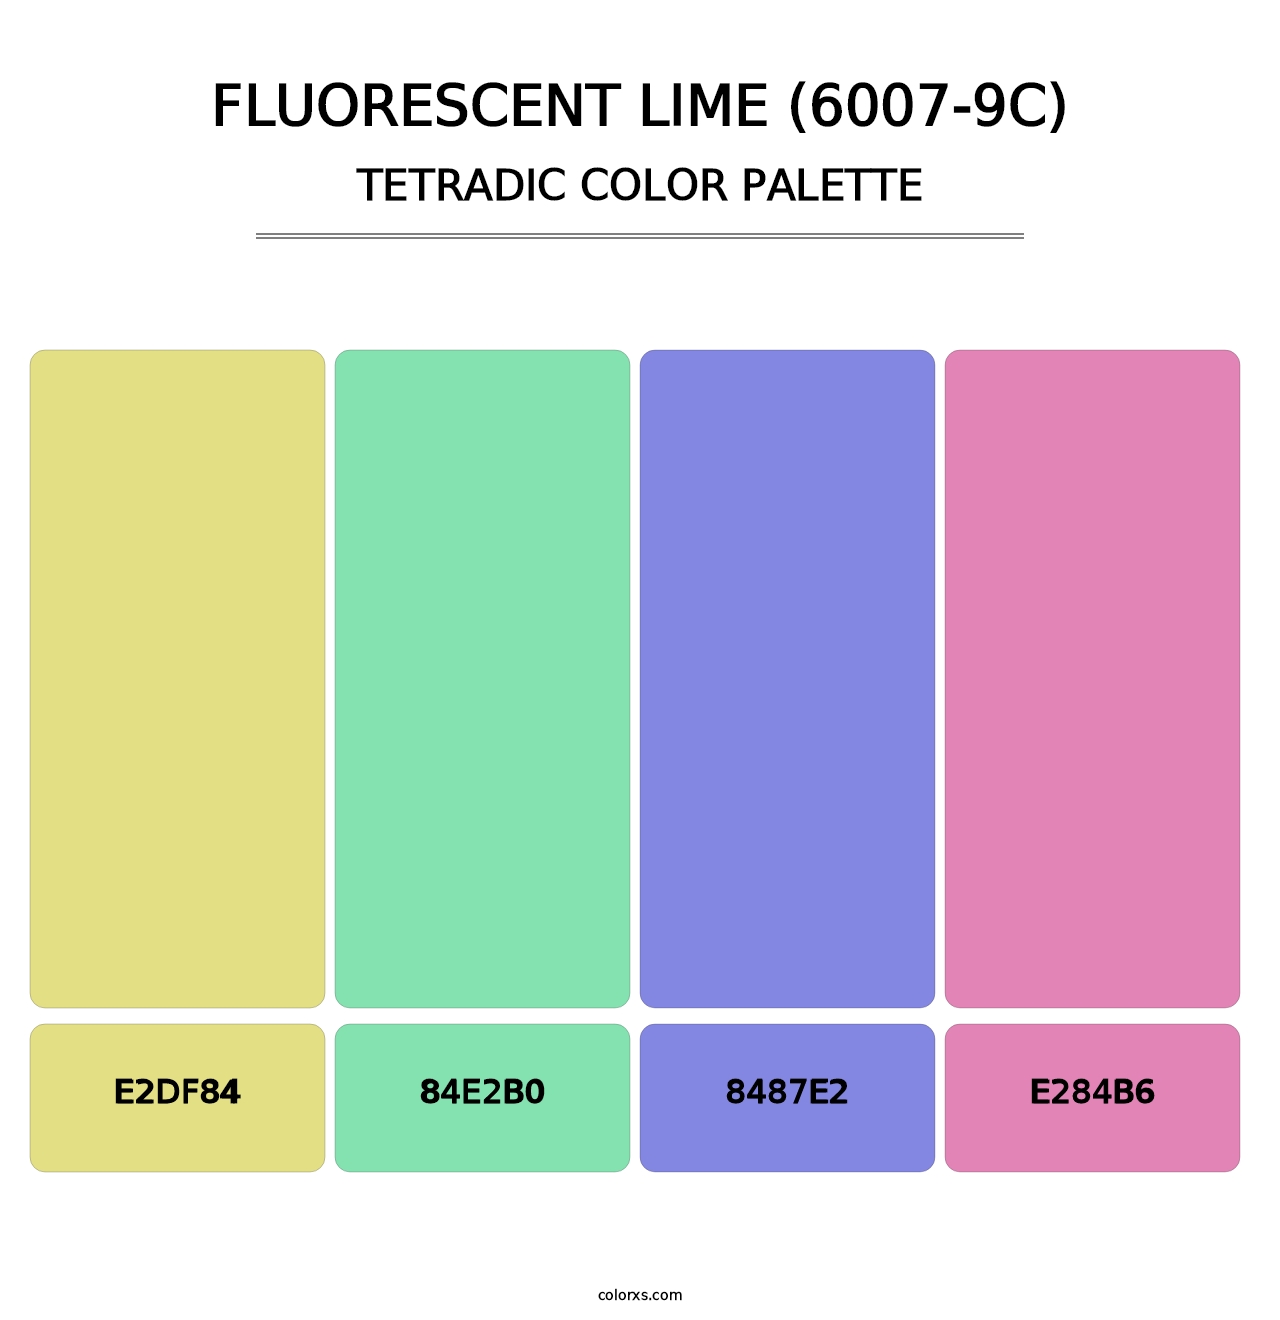 Fluorescent Lime (6007-9C) - Tetradic Color Palette